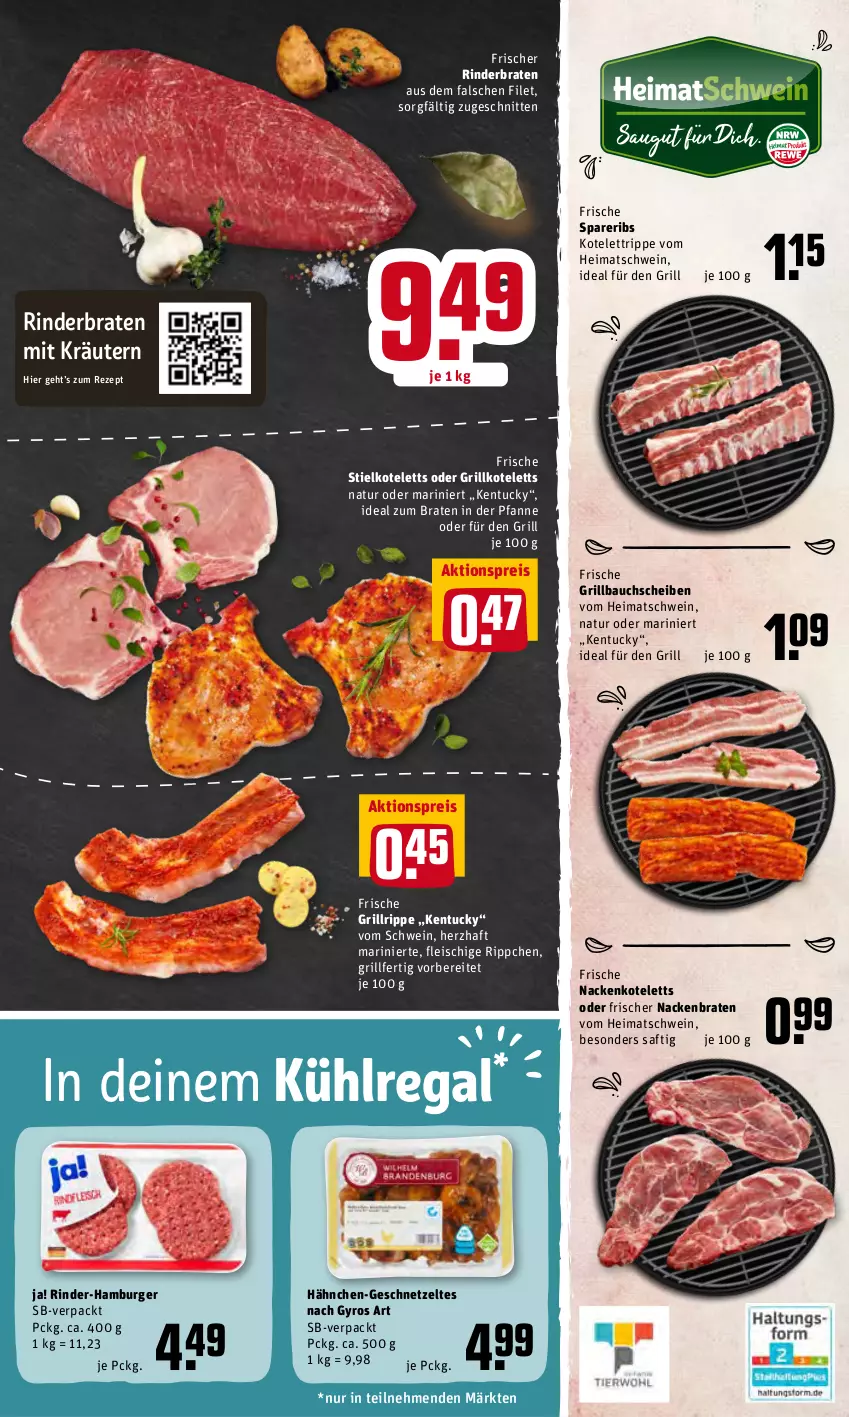 Aktueller Prospekt Rewe - REWE Ihr Kaufpark - von 25.04 bis 30.04.2022 - strona 5 - produkty: aktionspreis, Bau, bauchscheiben, braten, burger, eis, filet, fleisch, geschnetzeltes, grill, Grillbauch, grillkotelett, grillkoteletts, grillrippe, gyros, hamburger, ideal zum braten, kotelett, kräuter, kräutern, kühlregal, nackenkoteletts, natur, pfanne, regal, reis, rezept, rind, rinder, rinderbraten, saft, schnitten, schwein, spareribs, Ti, tuc, wein, Zelt